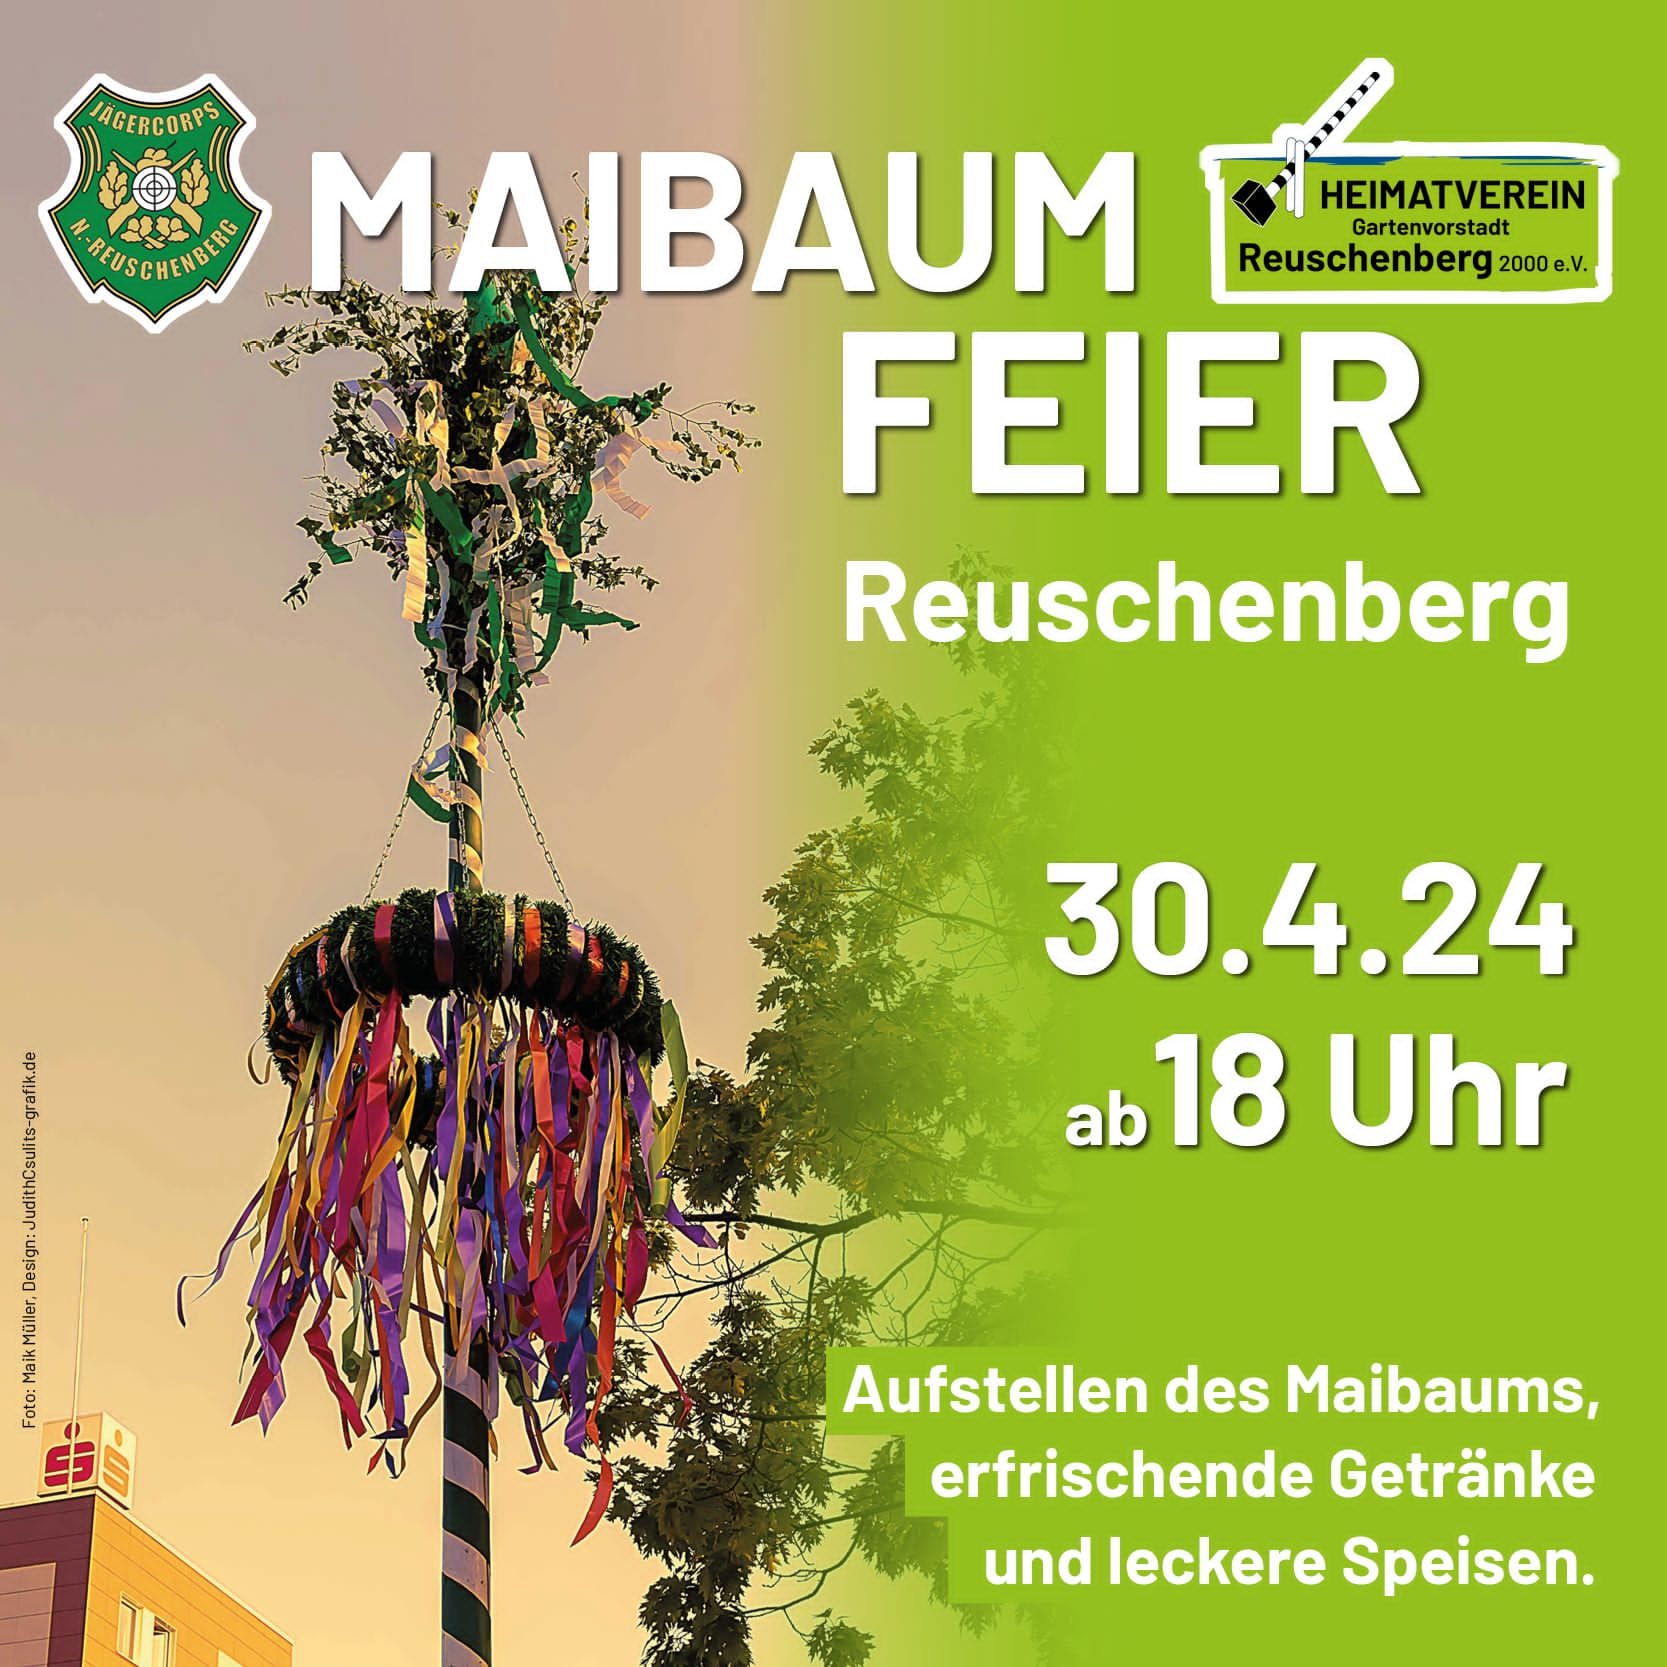 Einladung zur Brauchtums- veranstaltung "Maibaum setzen" in Reuschenberg am 30.4.2024 um 18.00 Uhr